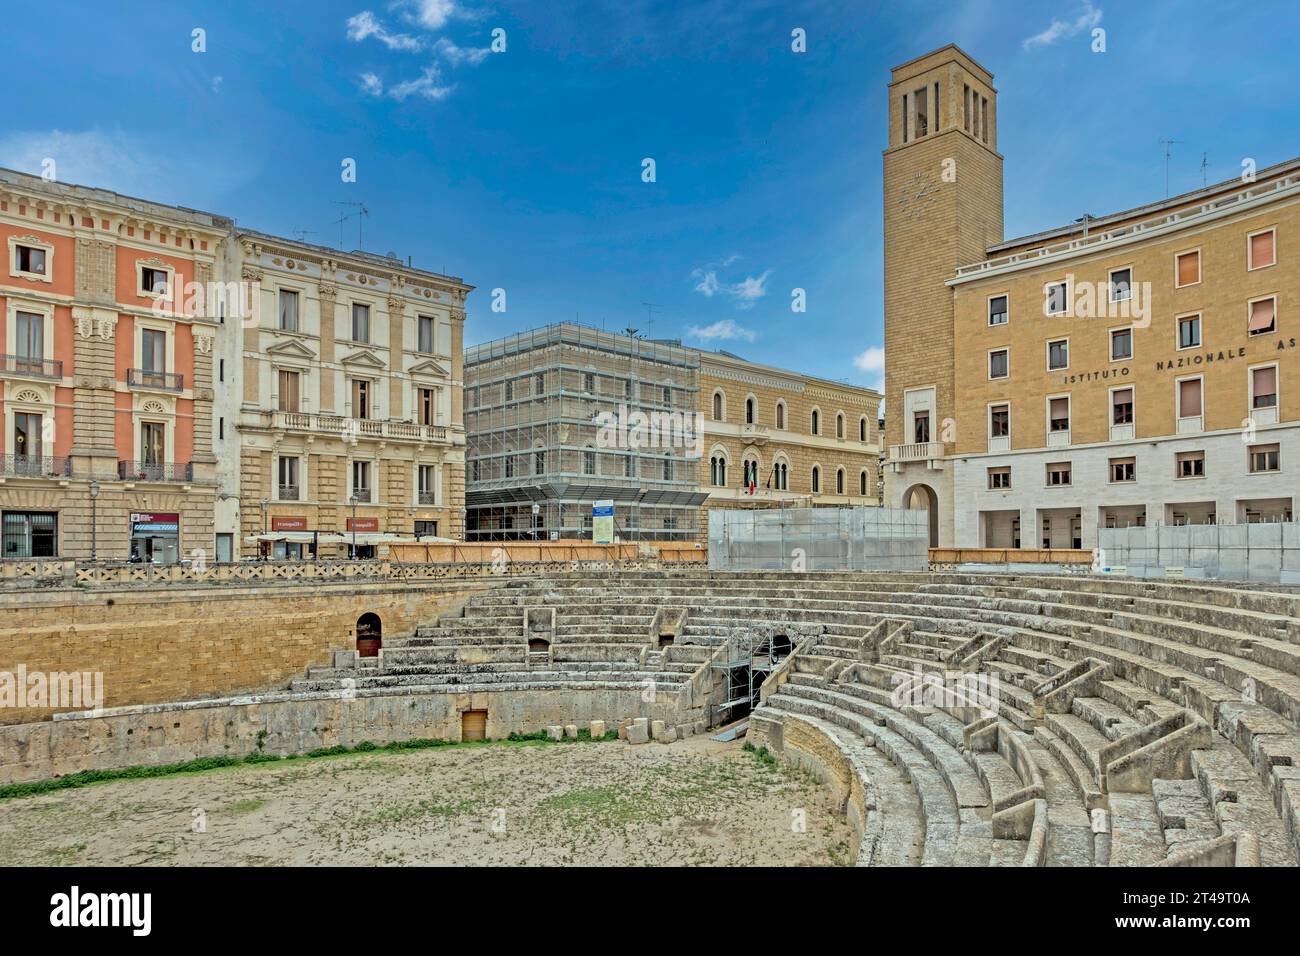 L'amphithéâtre romain de Lecce, Italie. Découvert seulement en 1901, le théâtre est encore utilisé pour des événements publics. Banque D'Images